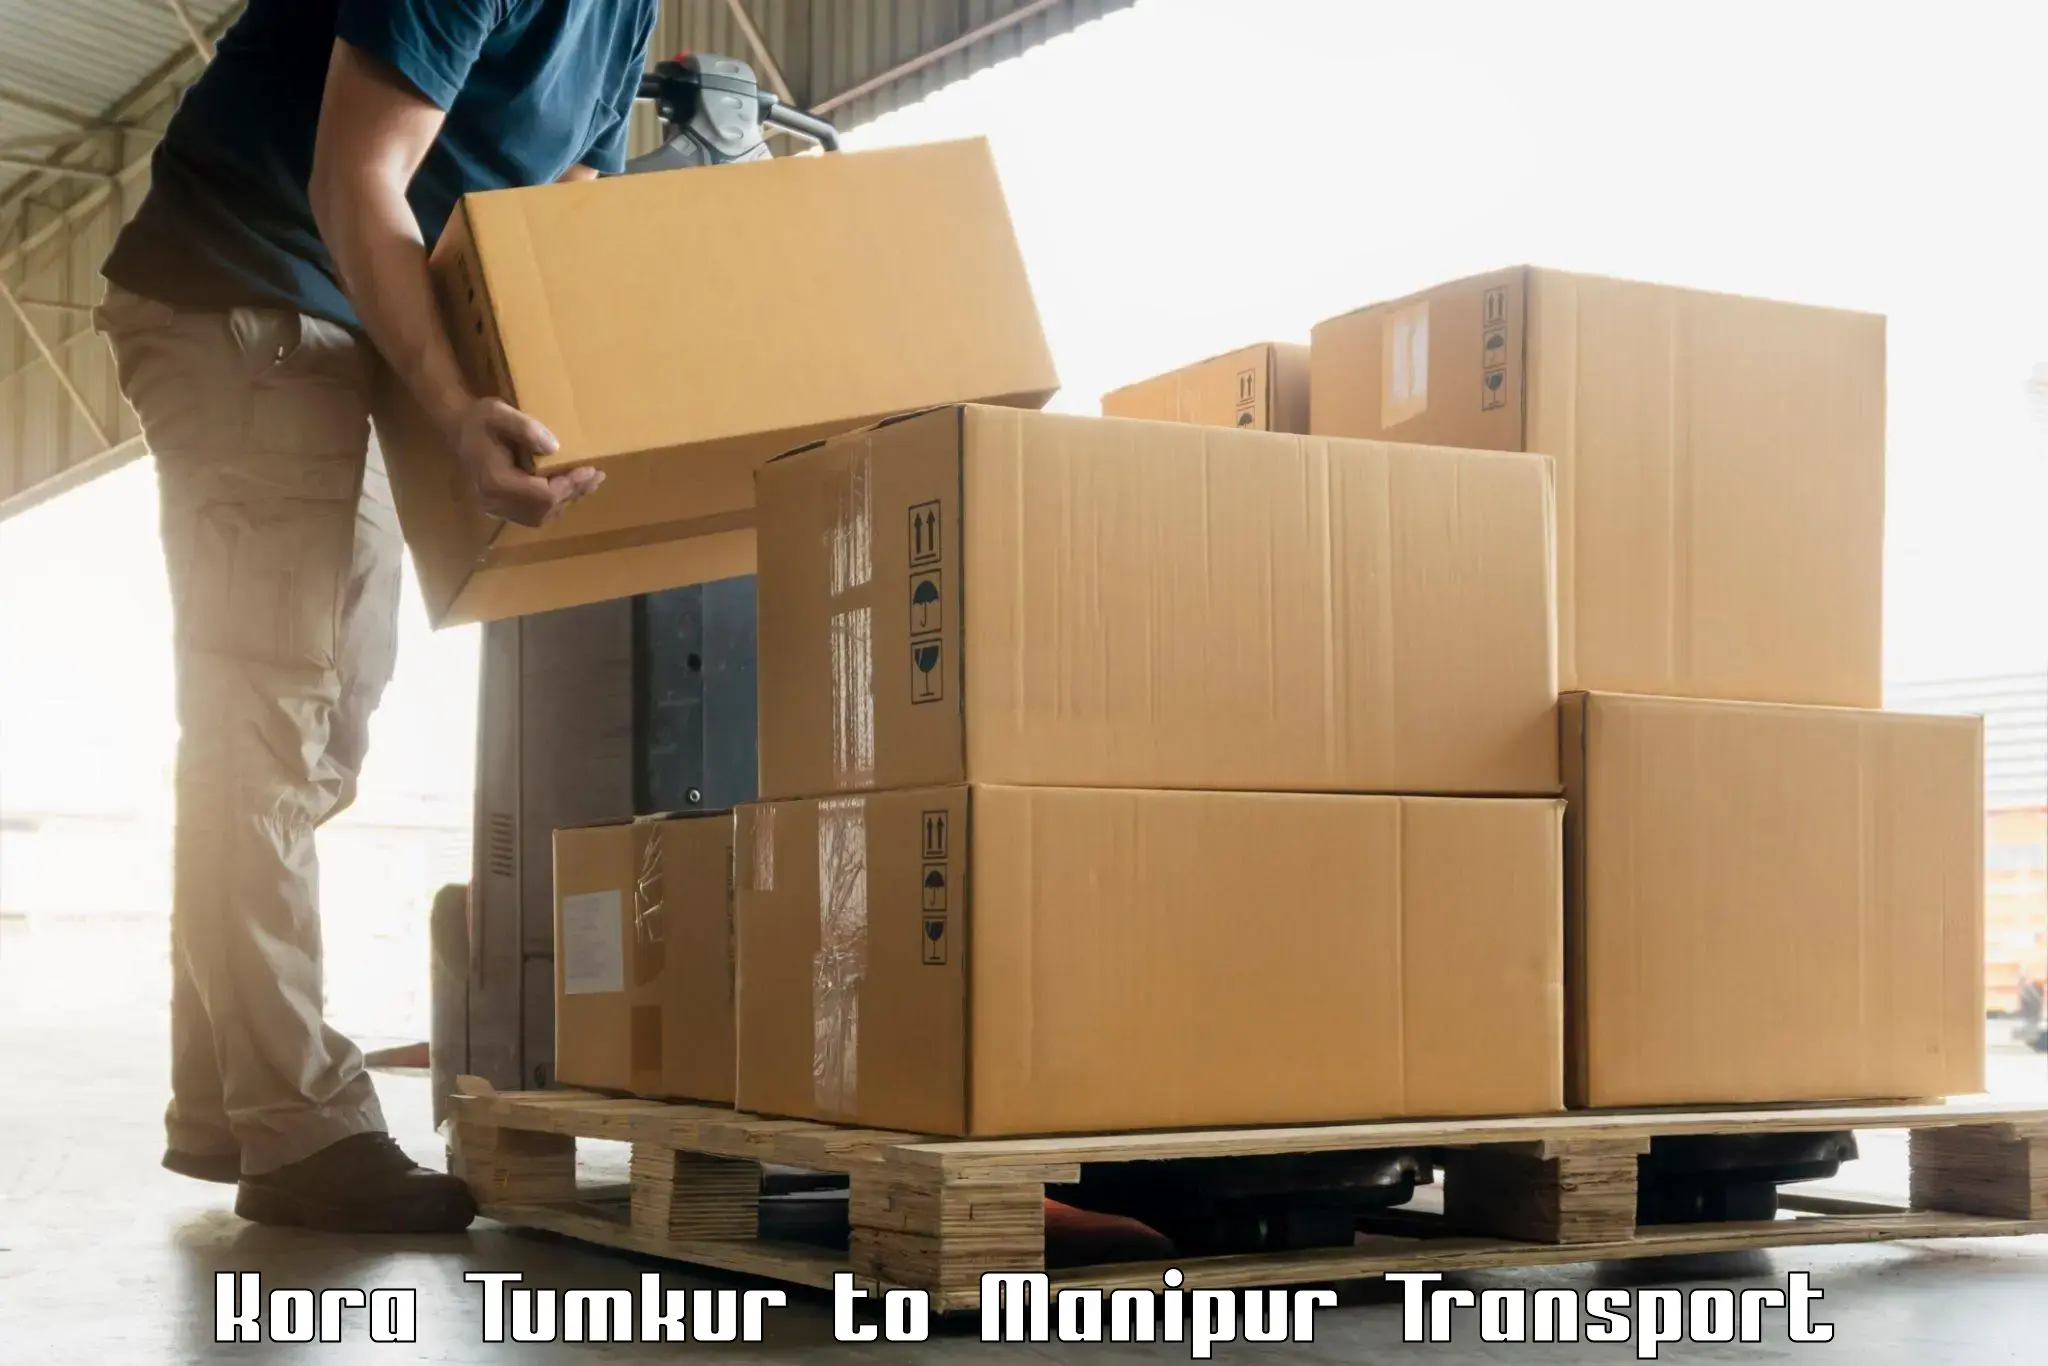 Two wheeler transport services Kora Tumkur to NIT Manipur